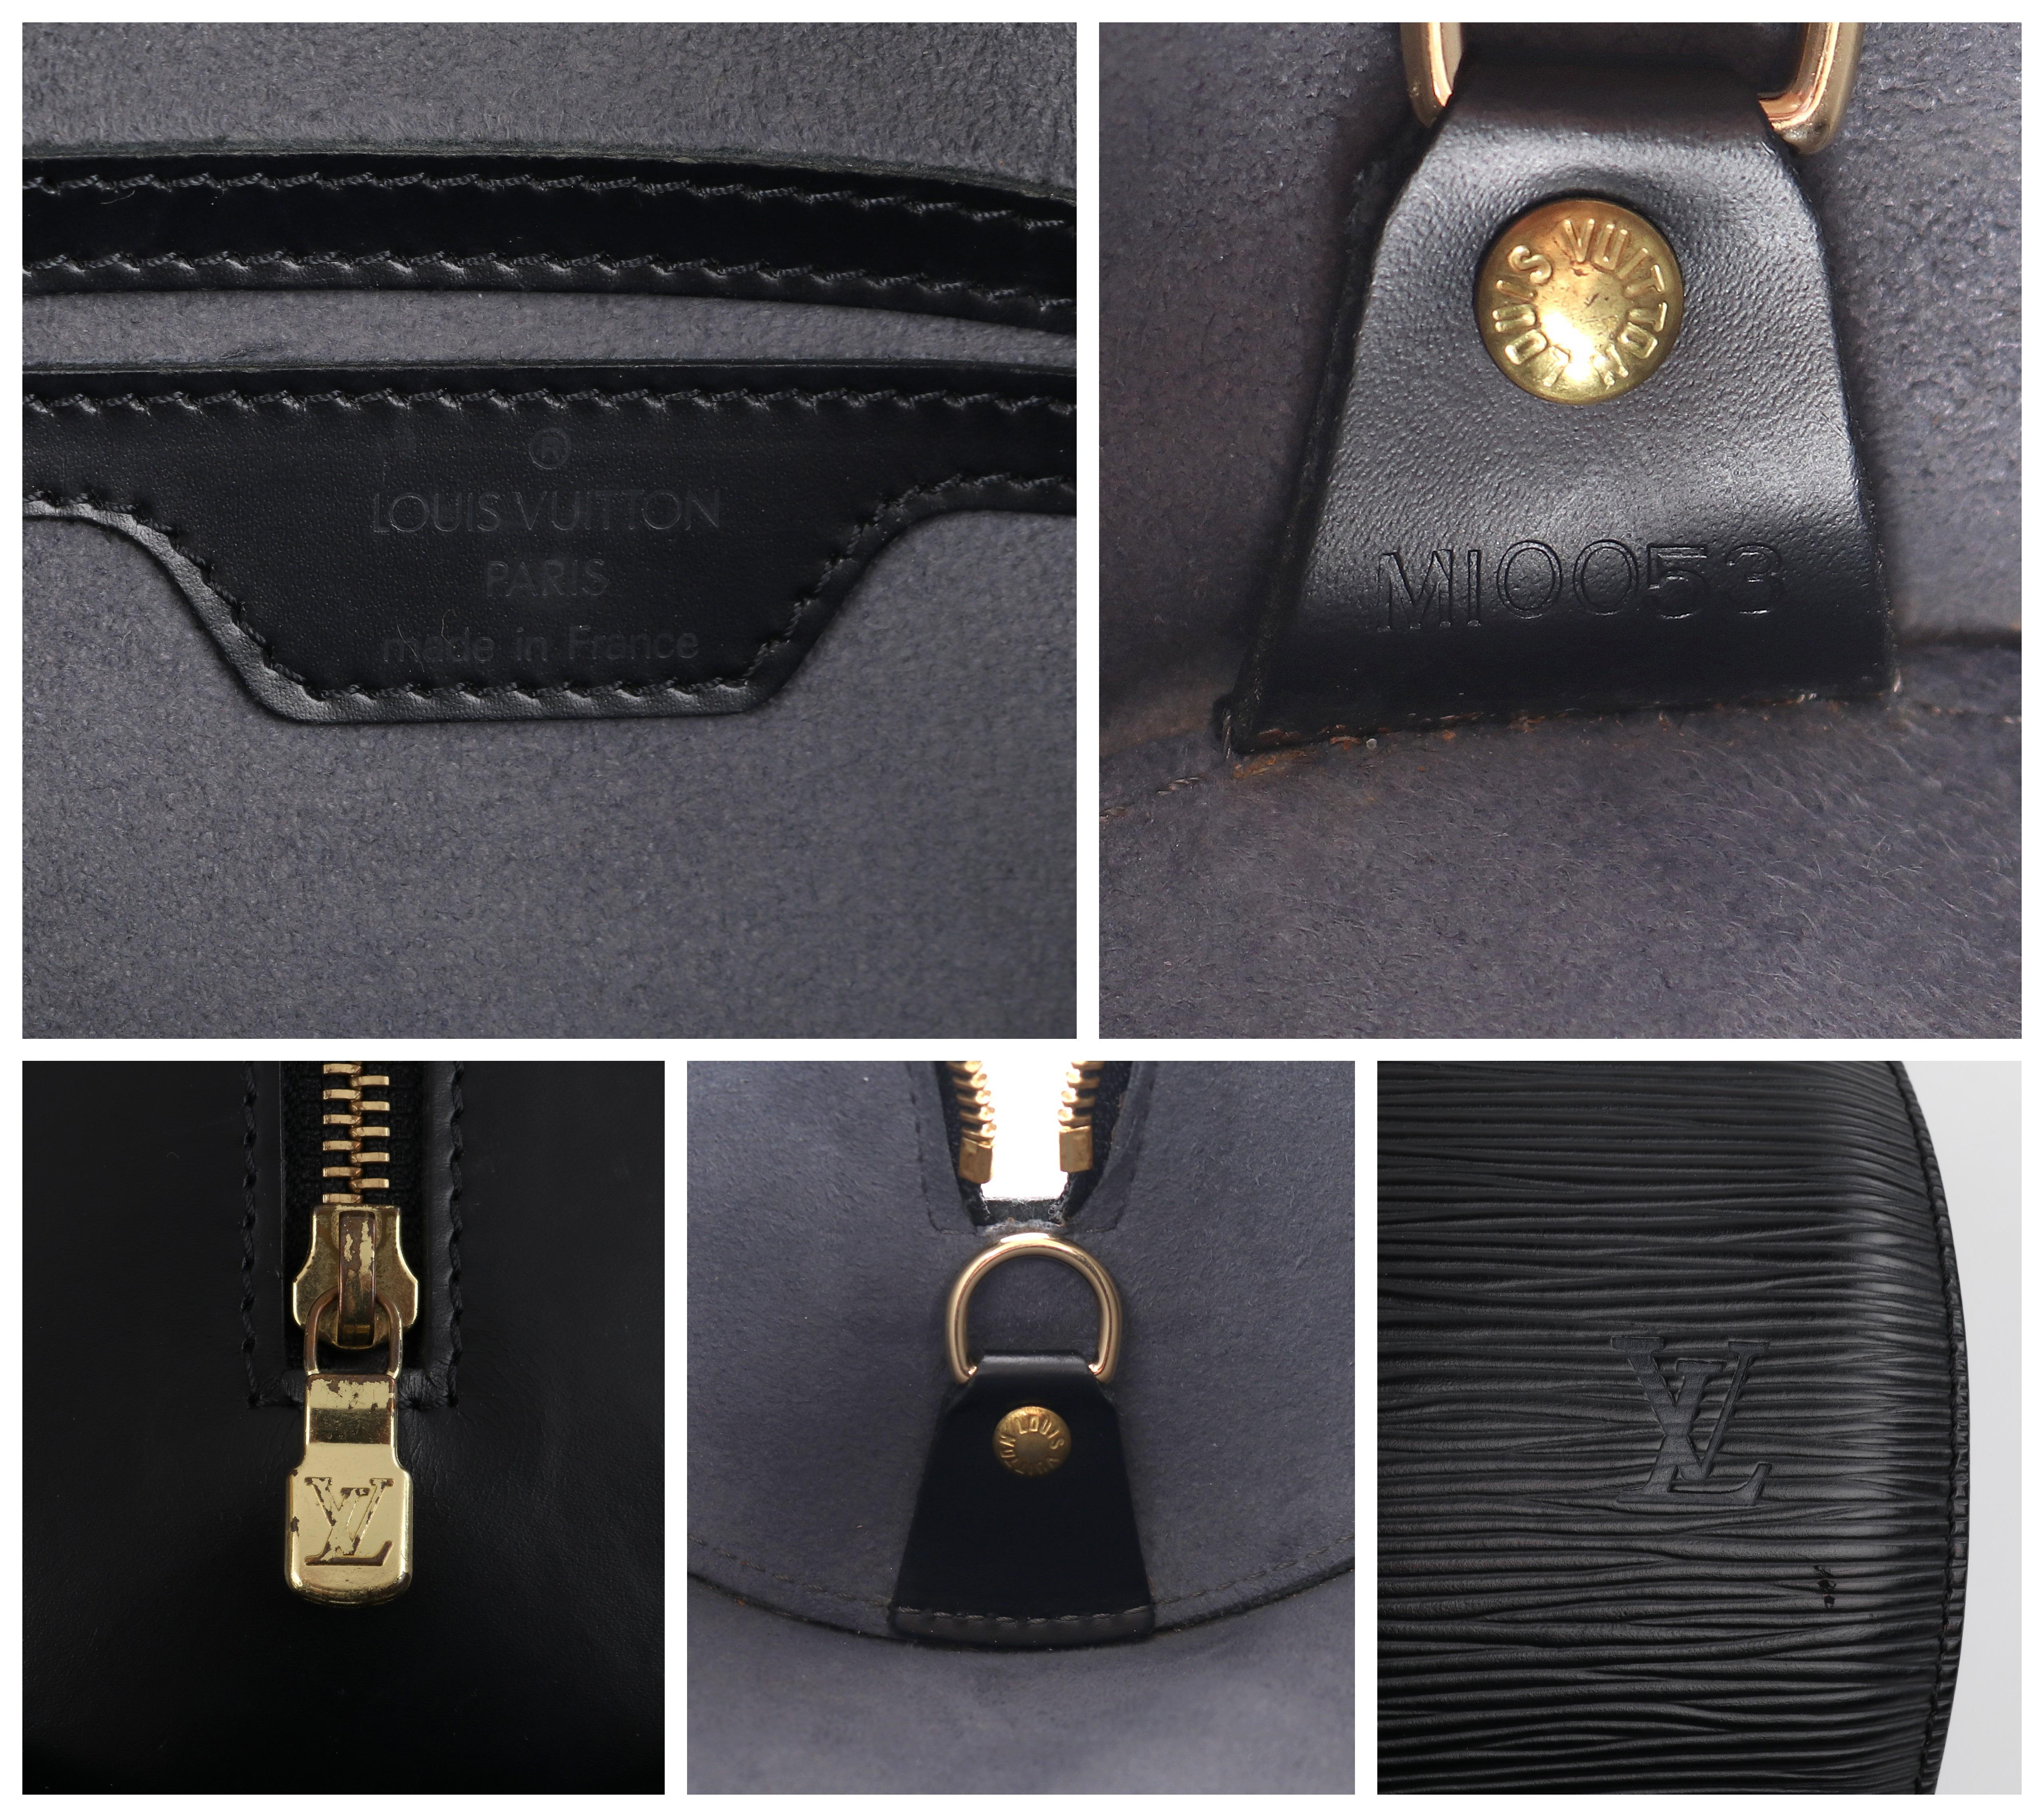 LOUIS VUITTON C.2003 “Soufflot” Black EPI Leather Oblong Handbag 4